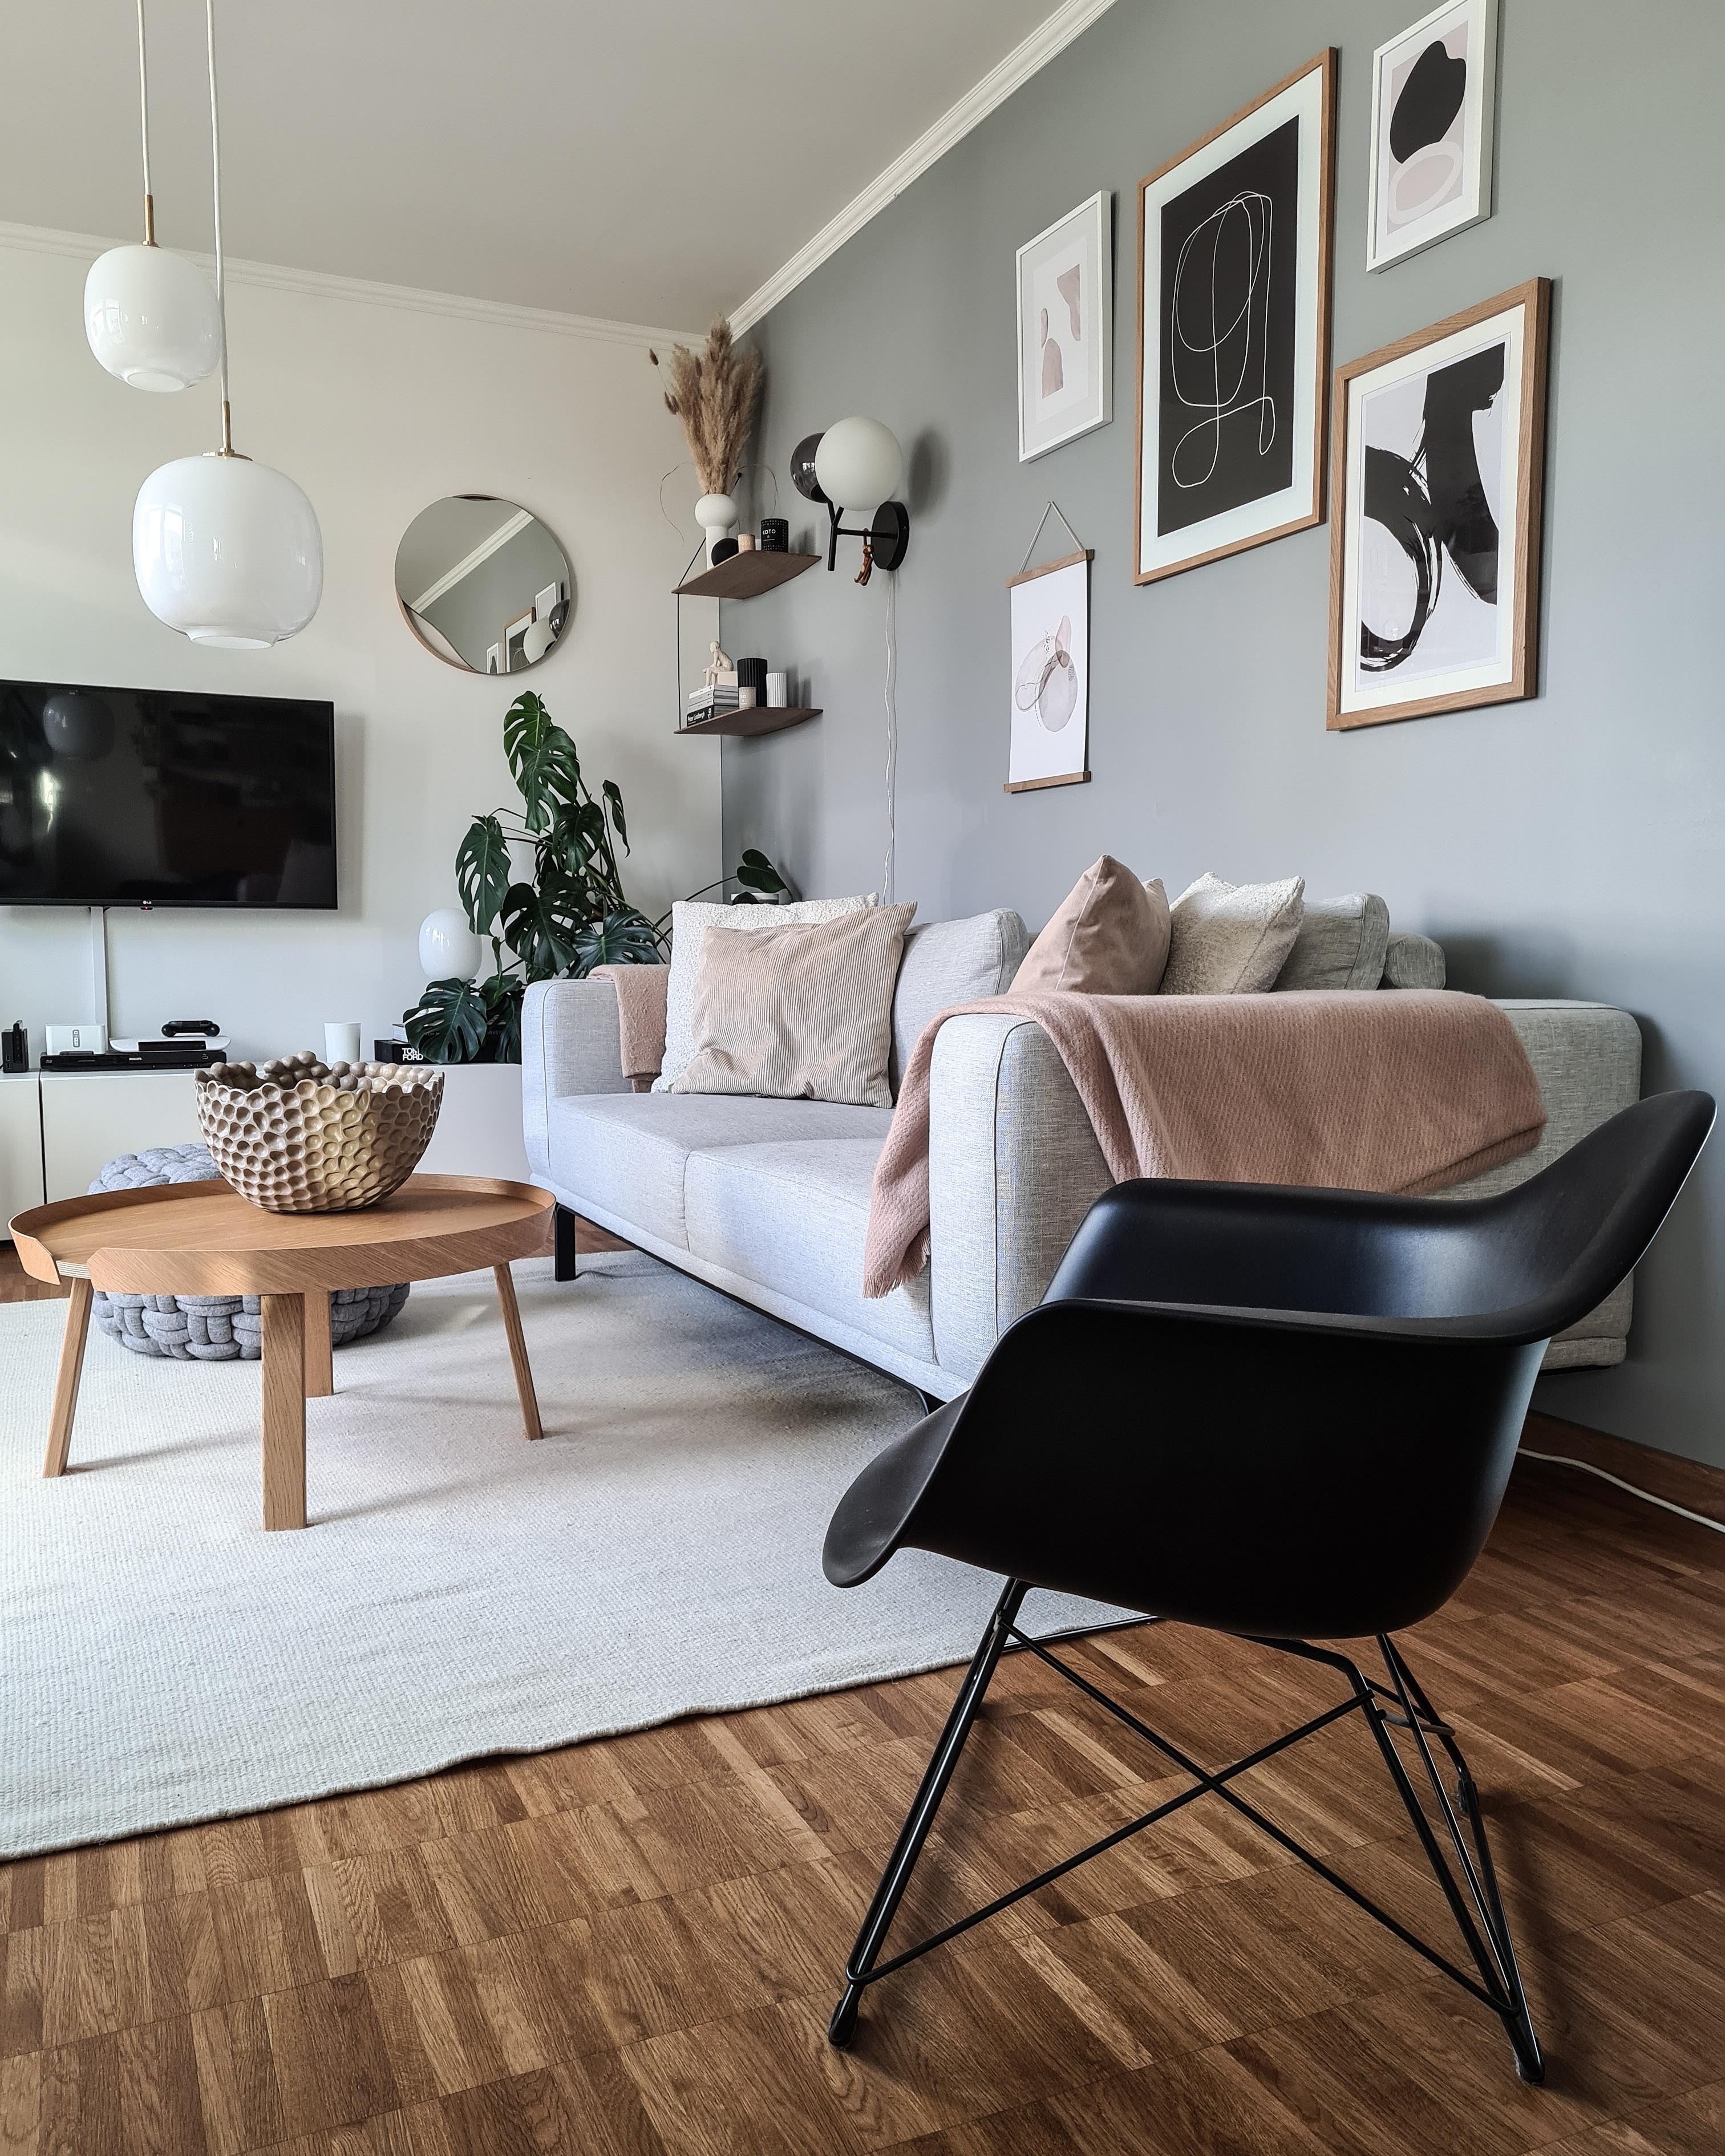 Wohnzimmer....

#wohnzimmerinspo #wohnzimmer #livingroominspo #meinzuhause #couchstyle 